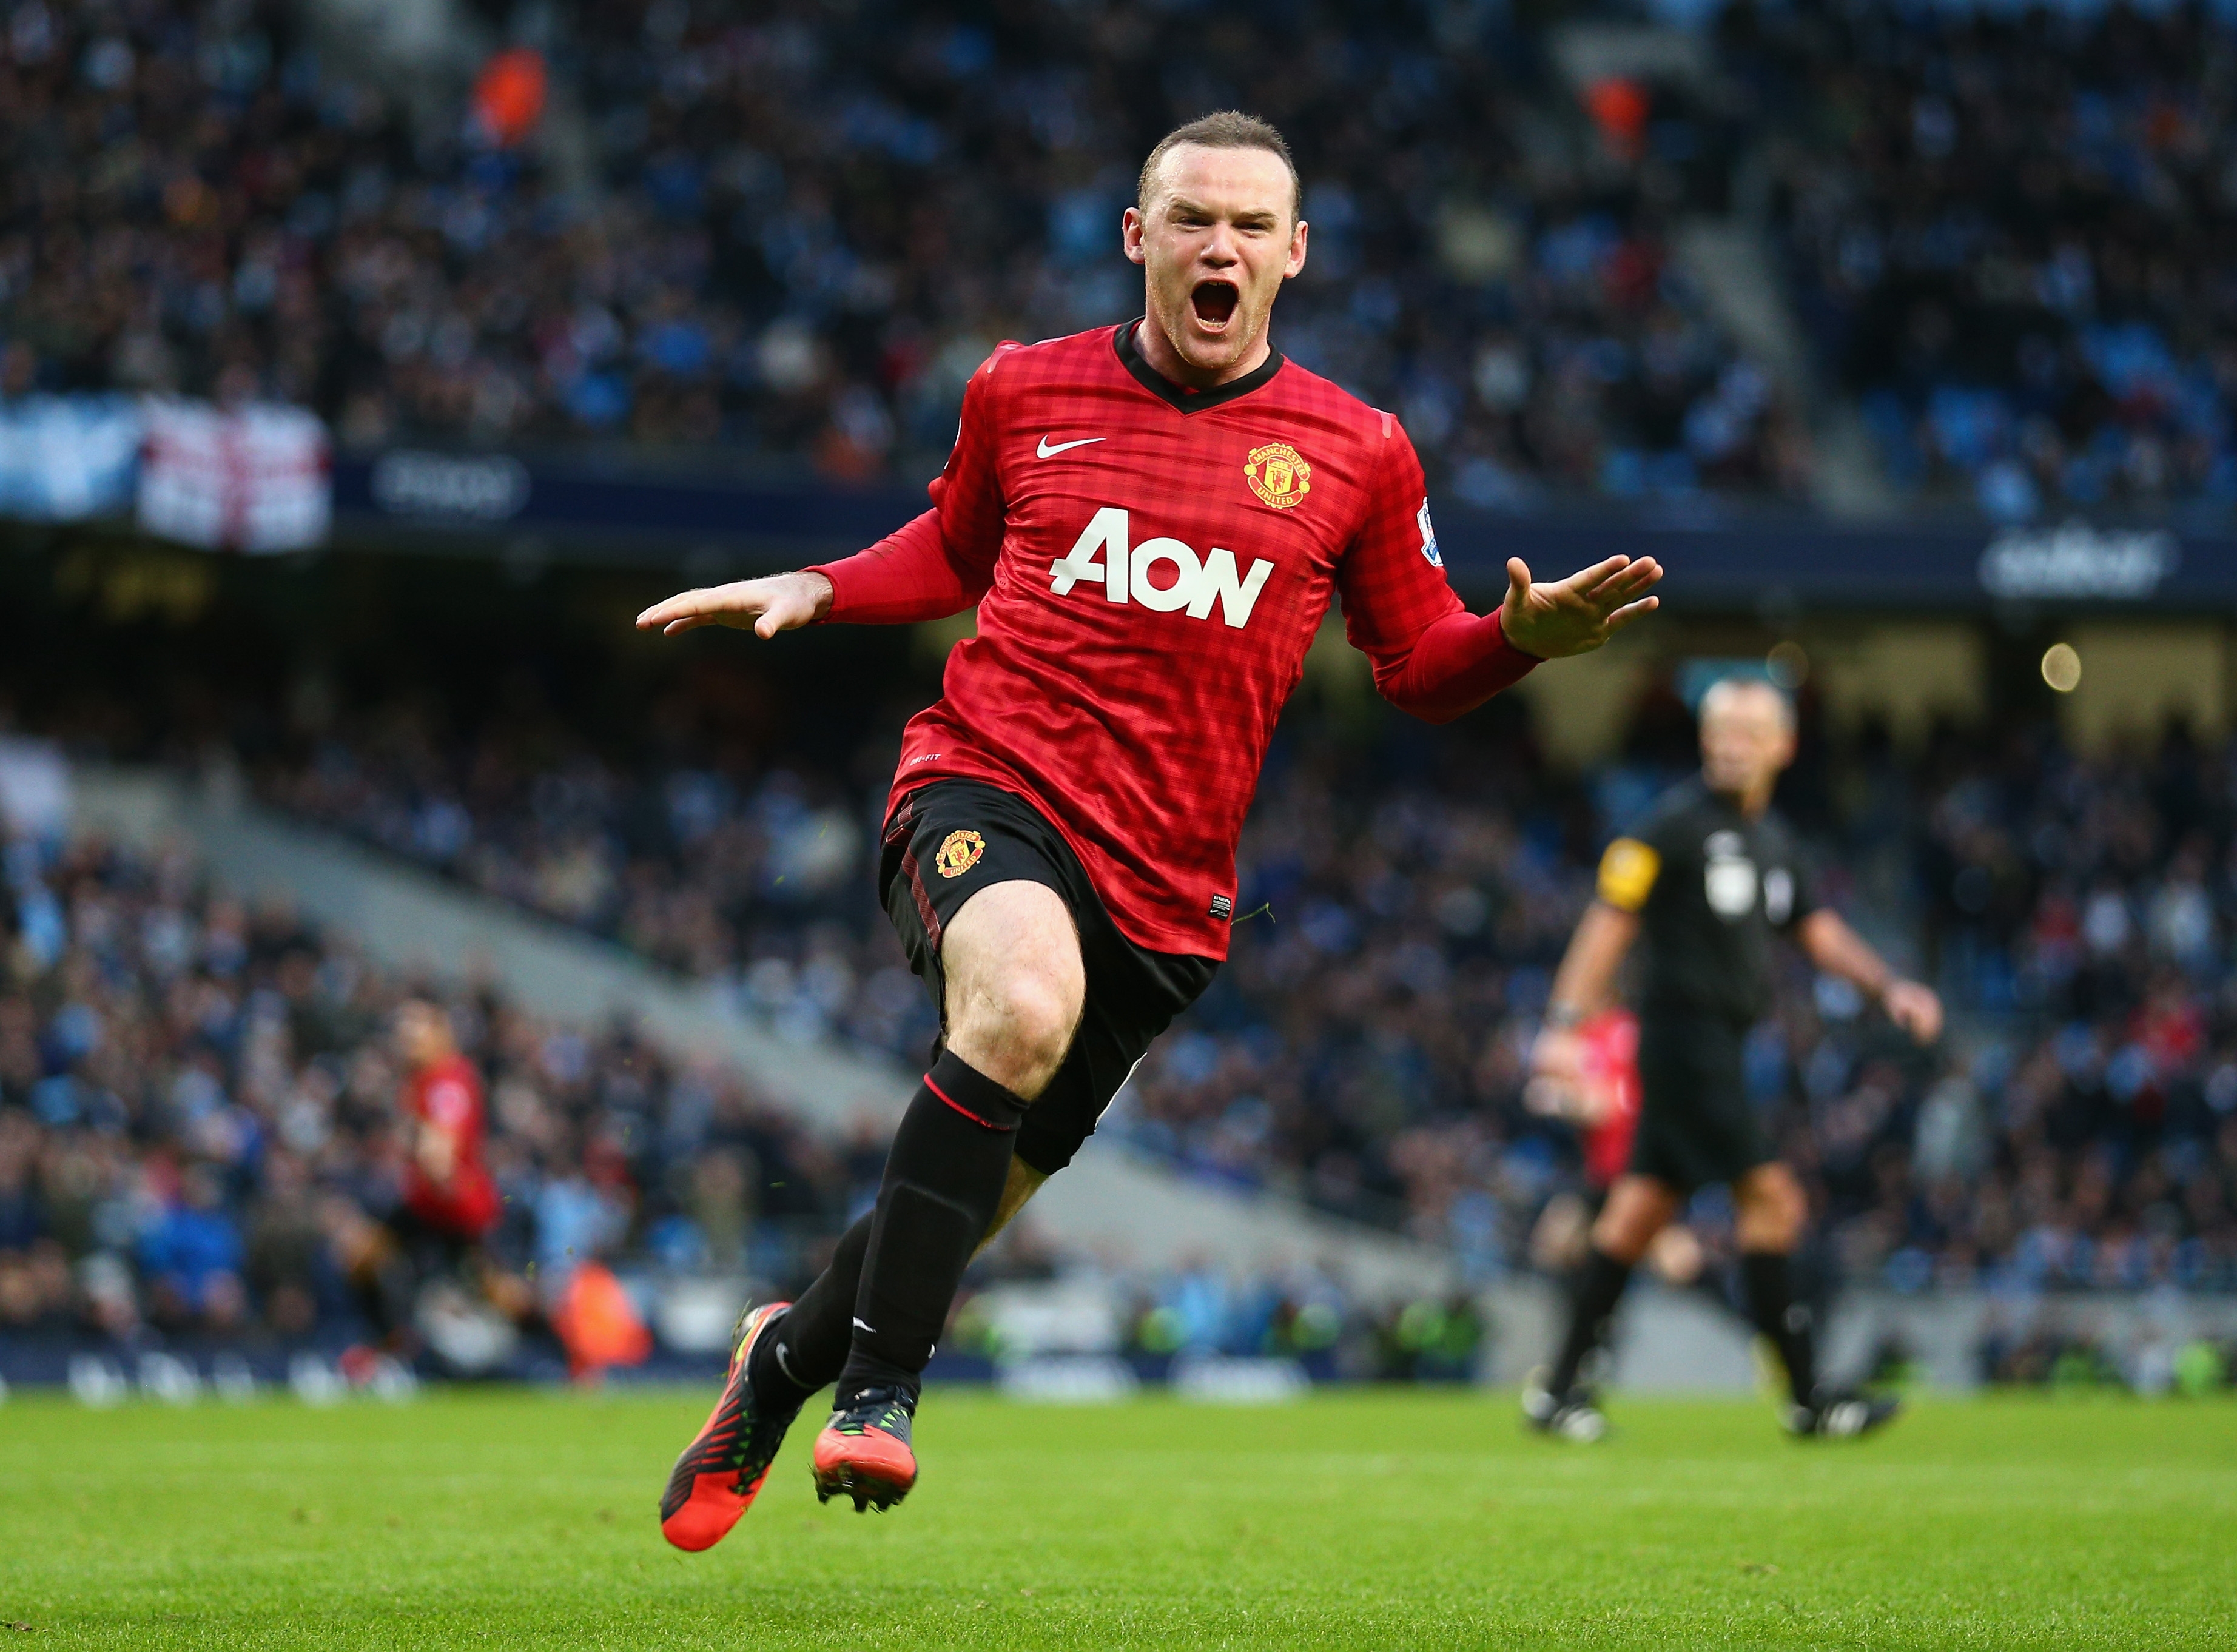 Wayne Rooney Goal Celebration Manchester United